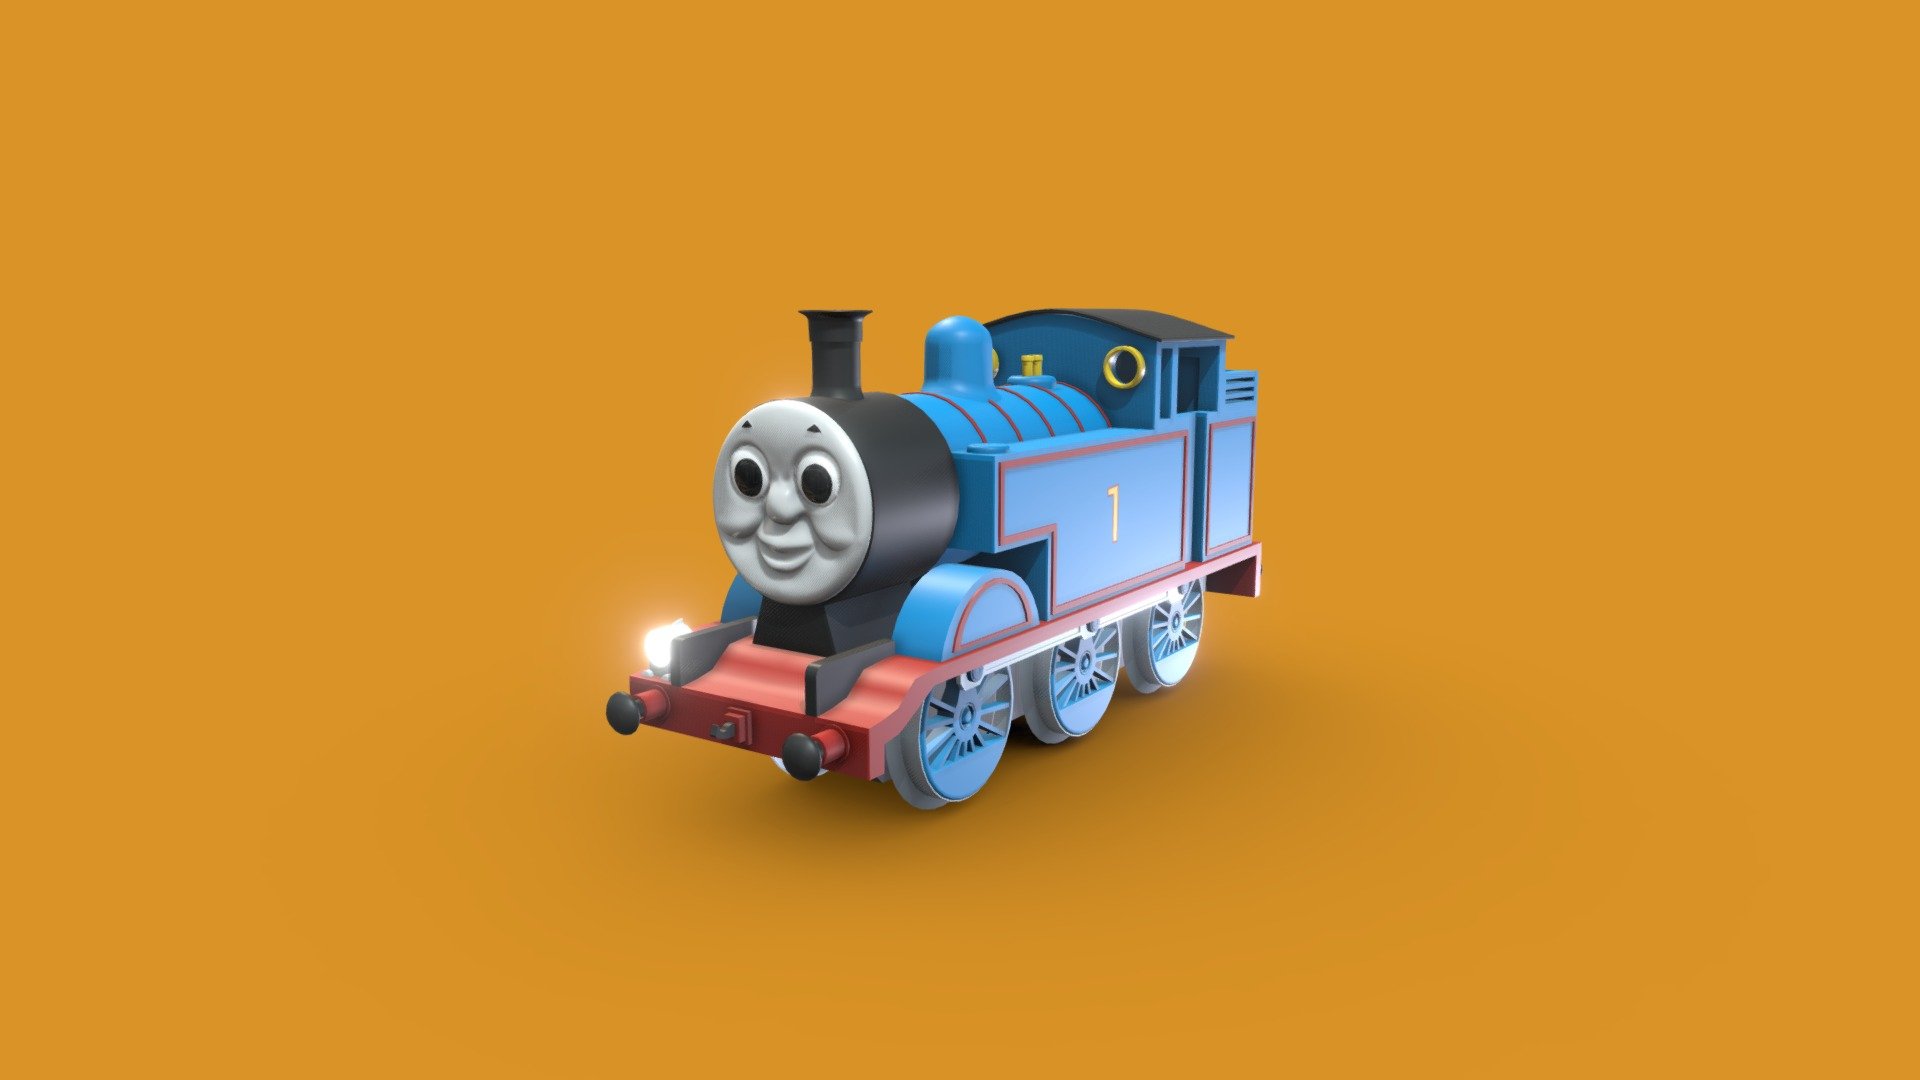 Thomas_the_Tank_Engine